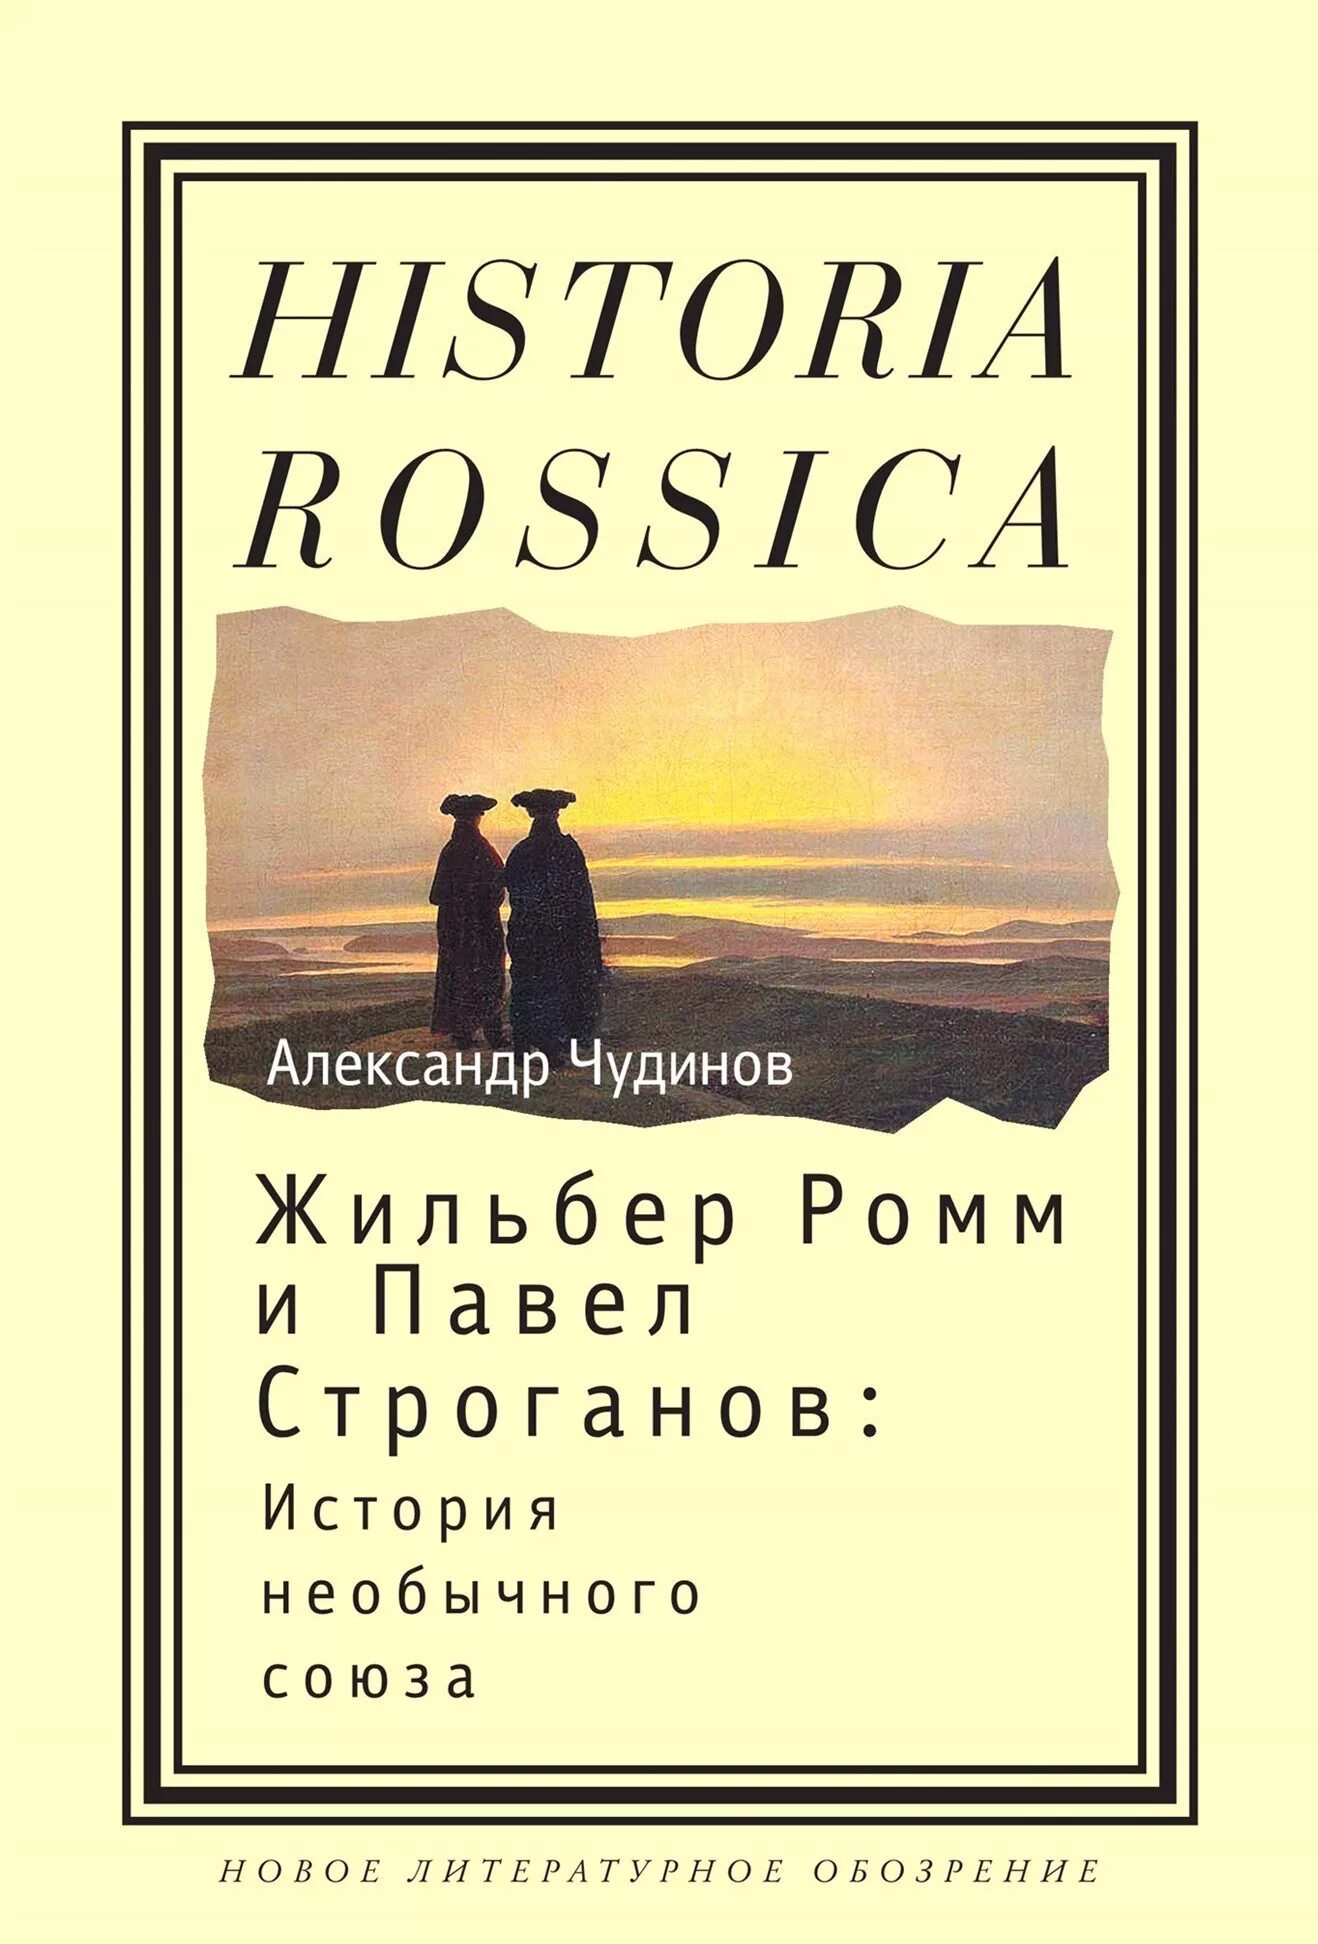 Ромм книги. Жильбер Ромм. Historia Rossica книги. Новое литературное обозрение книги.